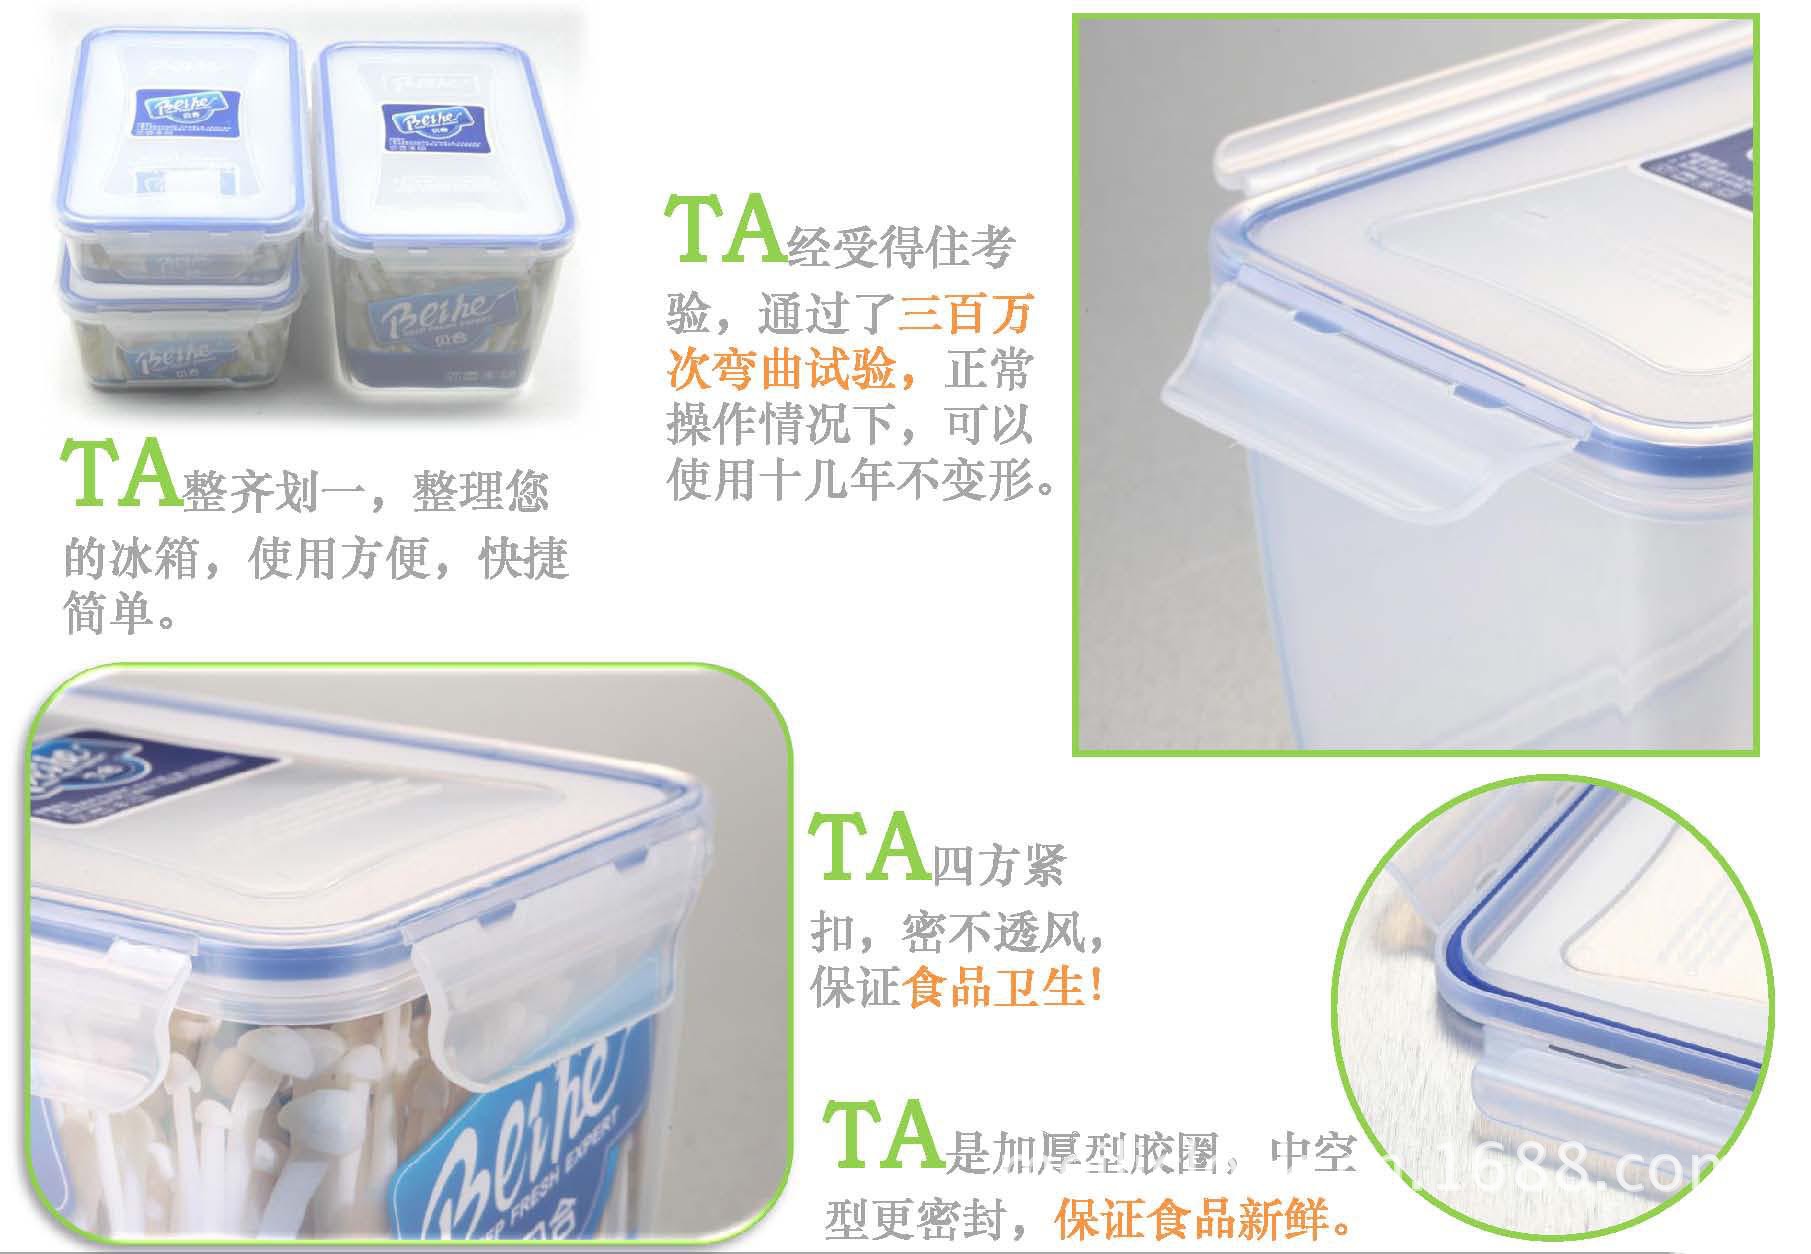 贝合1l微波炉pp便当盒 厨房专用环保材质保鲜盒 可贴牌冰箱保鲜盒